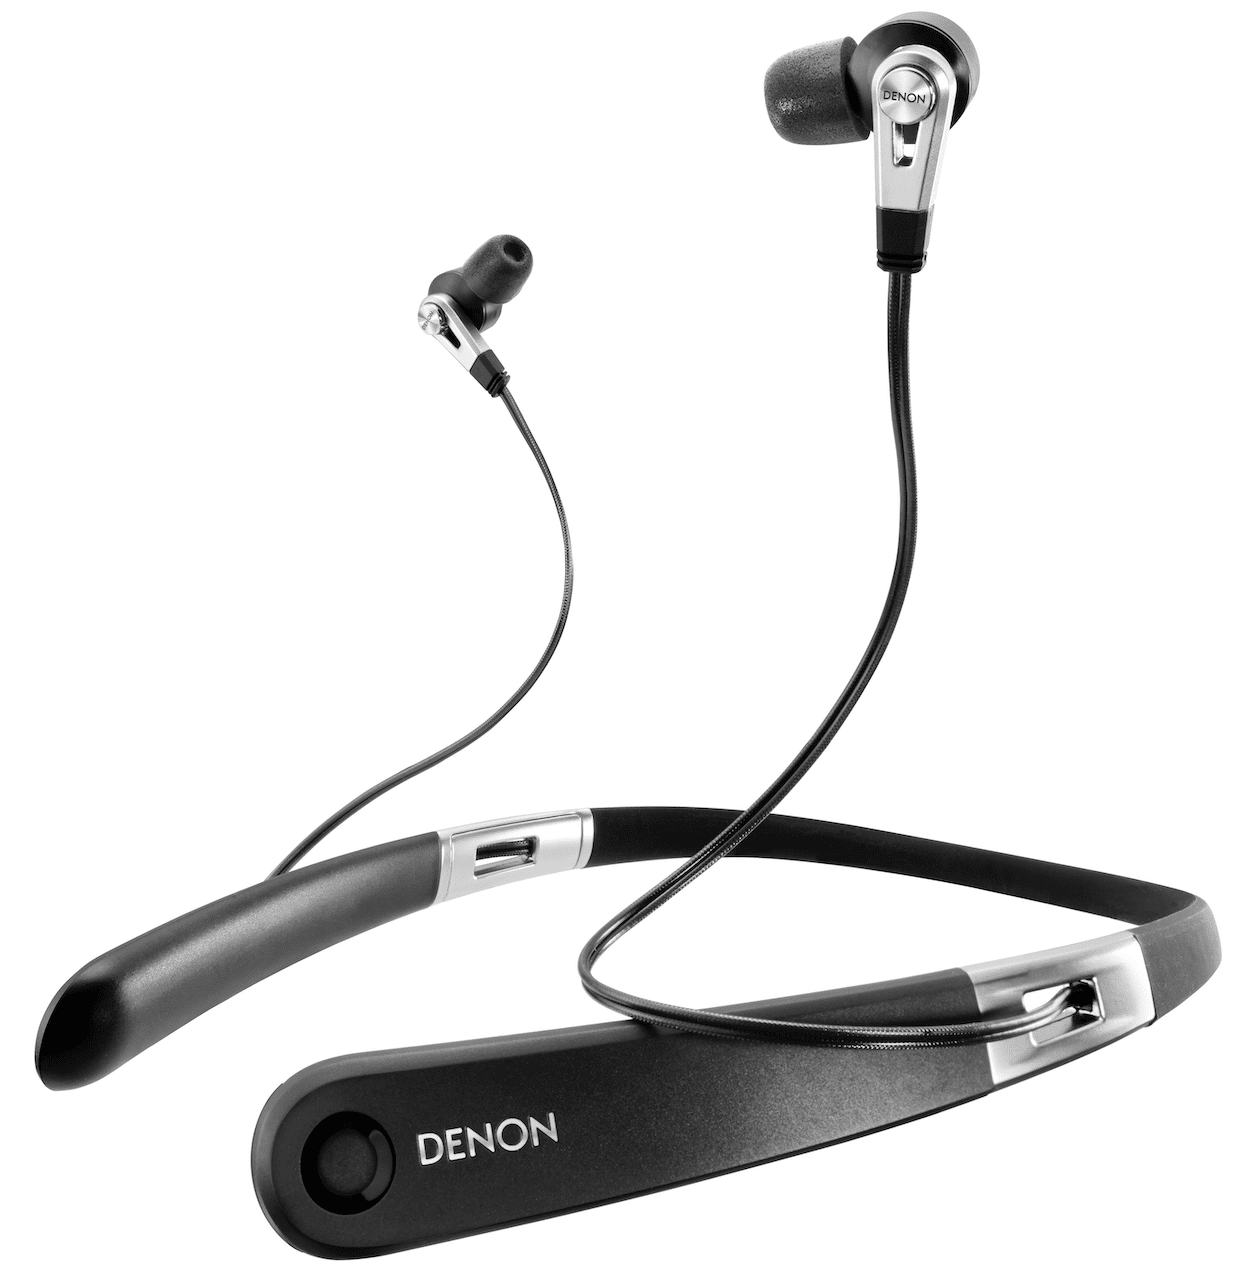 AH-C820W wireless in-ear headphones From Denon